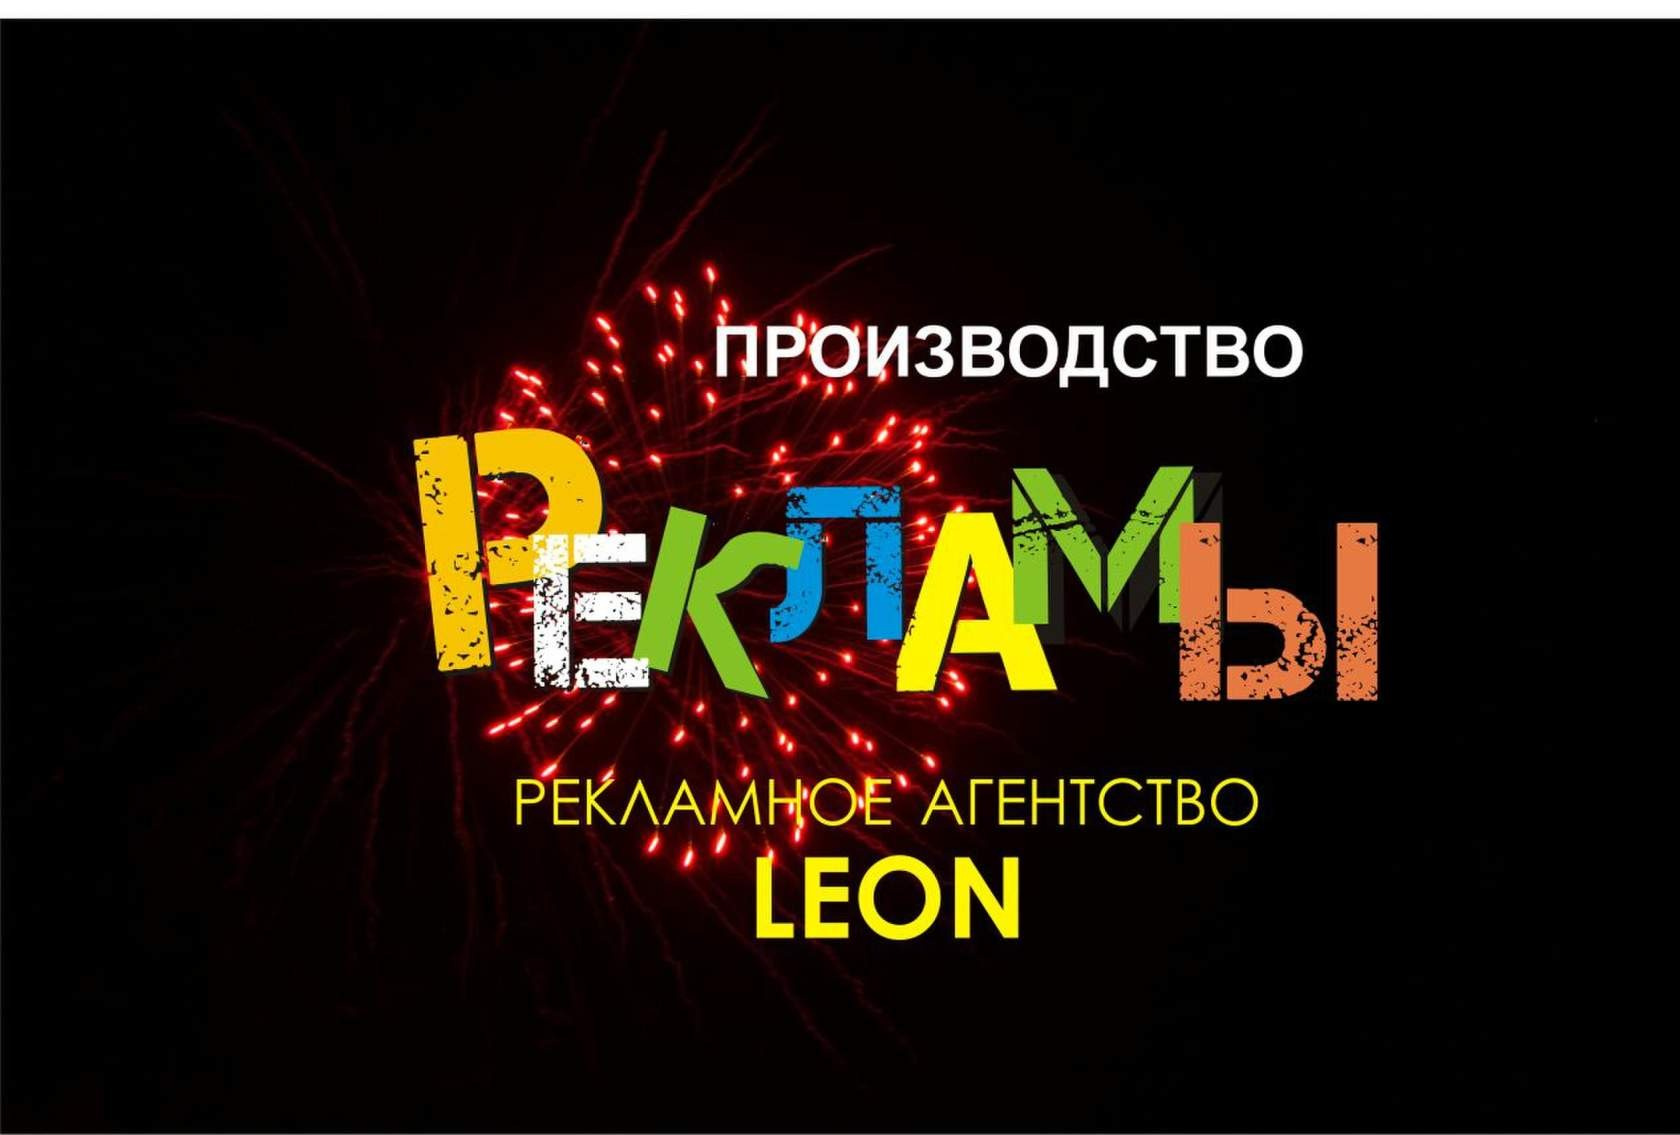 Leon рекламное агентство